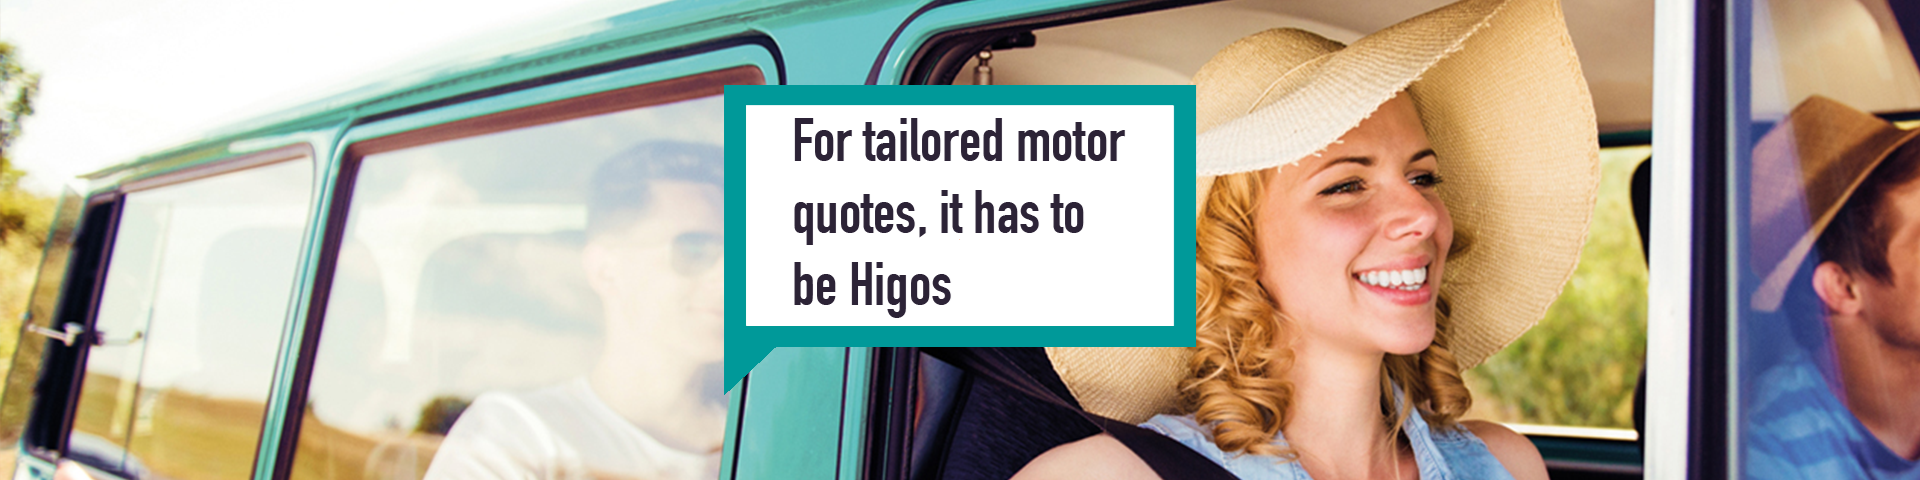 Higos Personal insurance woman in car motor